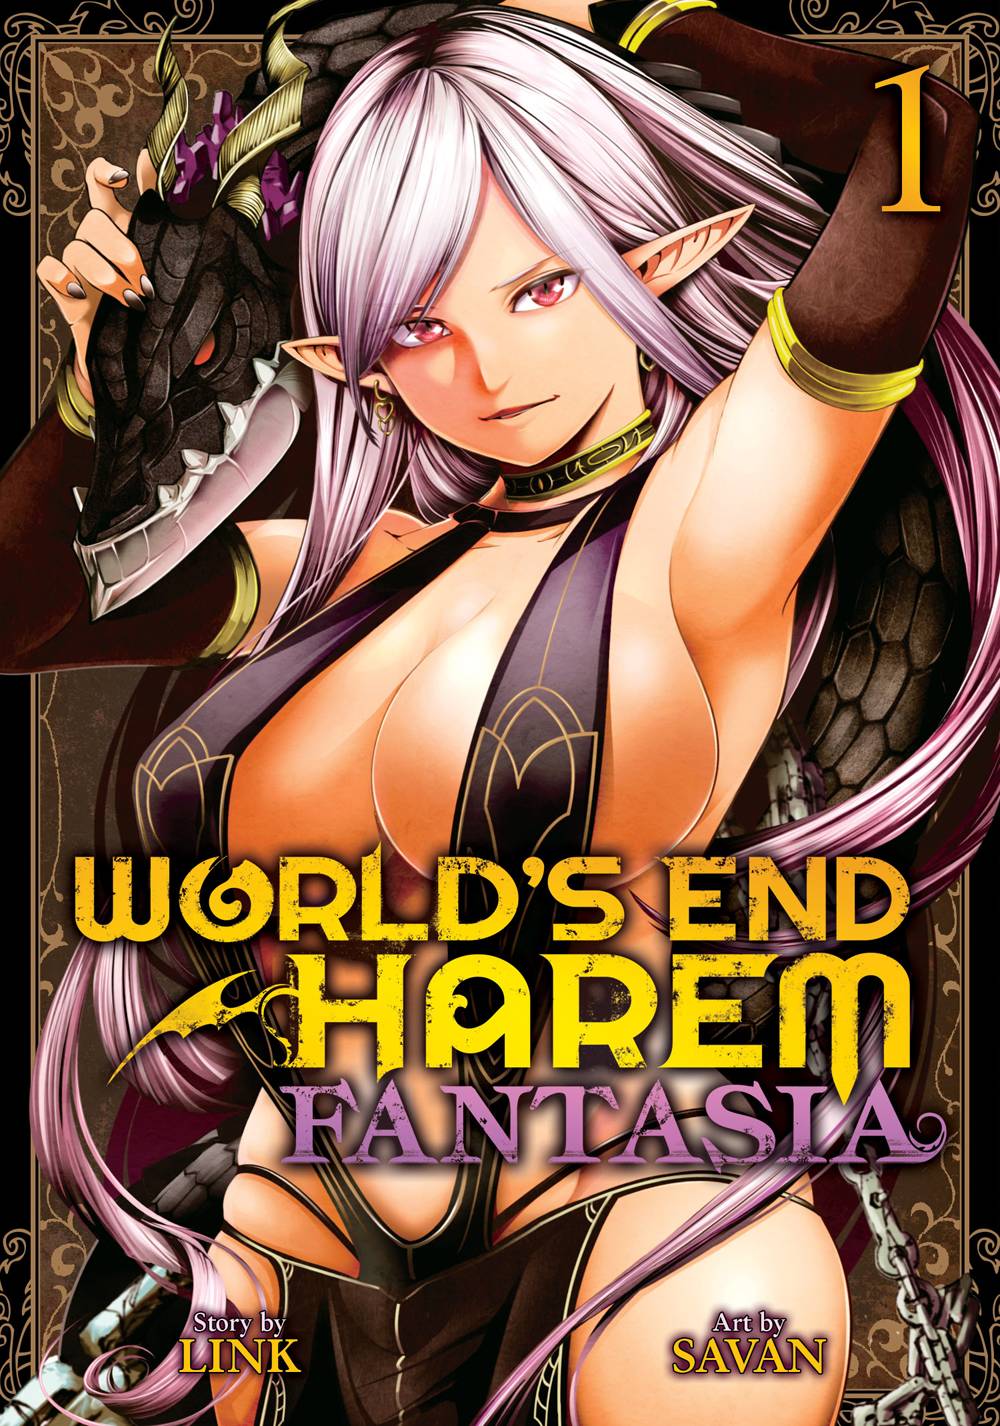 Worlds end harem fantasia gn vol 01 (mr) (JUN192086) .